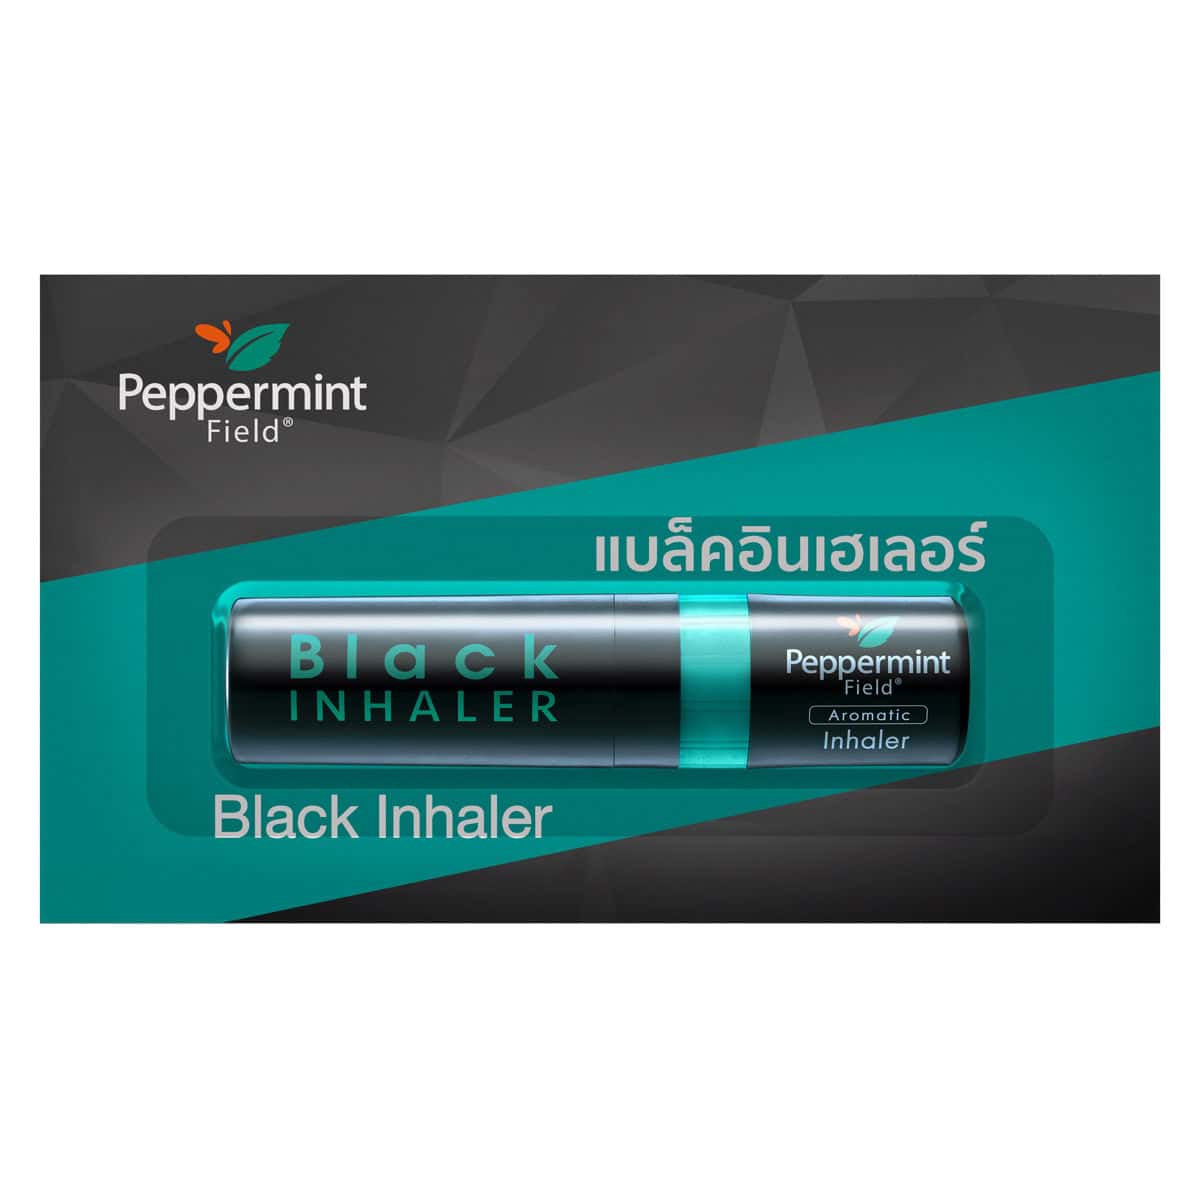 Peppermint Field Aroma Inhalator(Blak Inhaler) 2in1, 2ml